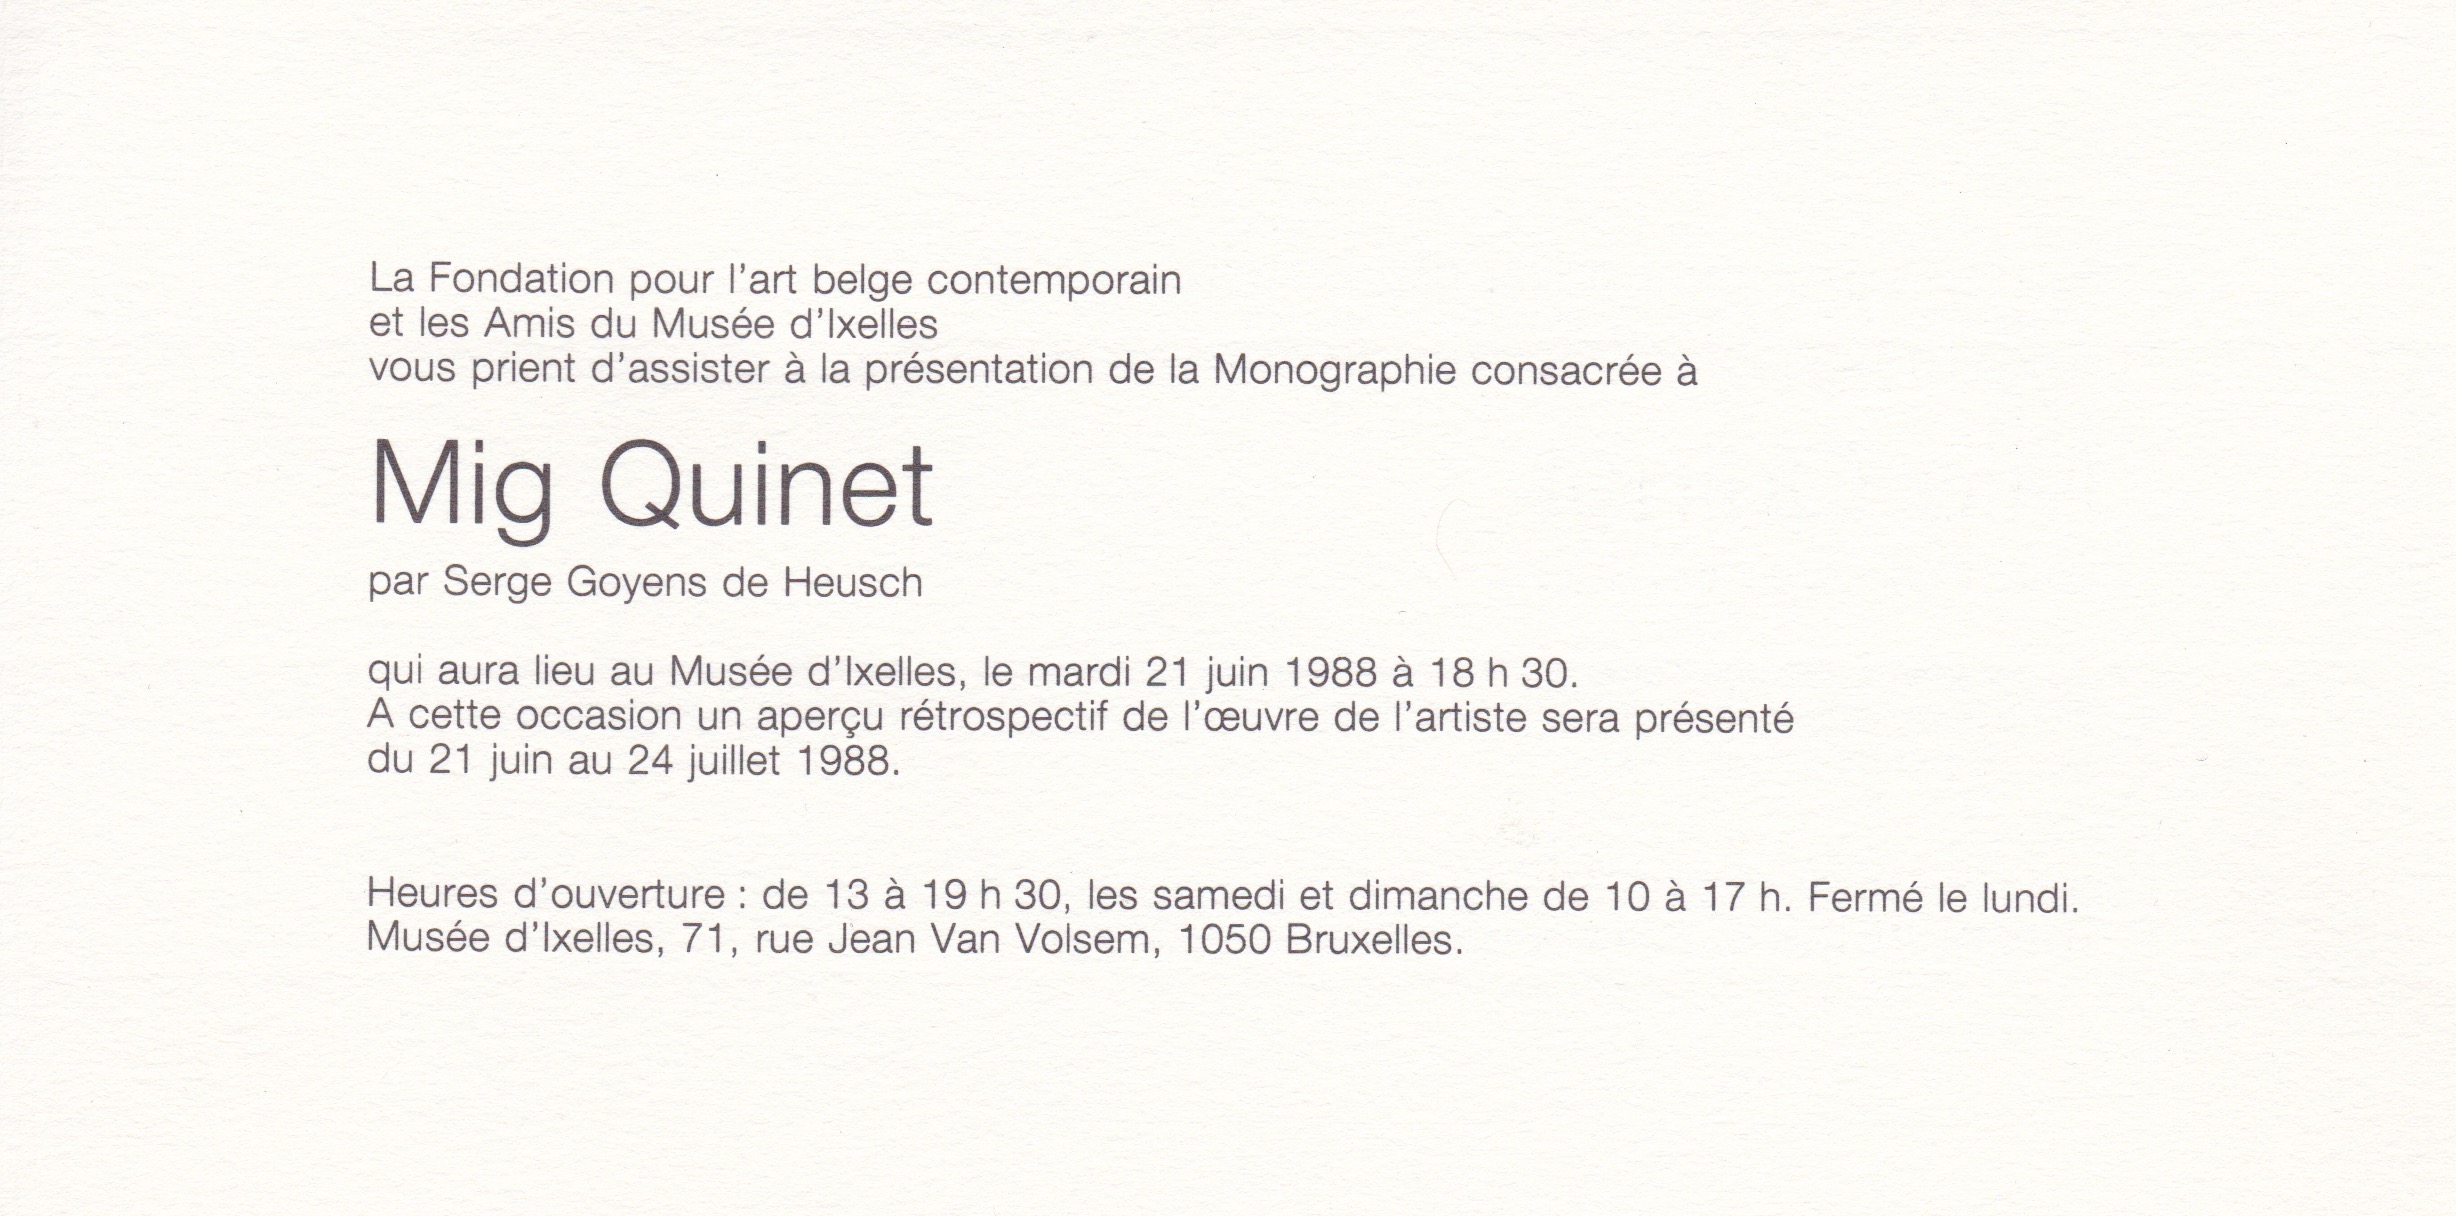 Retrospective Mig Quinet au musée d'ixelles, 1988